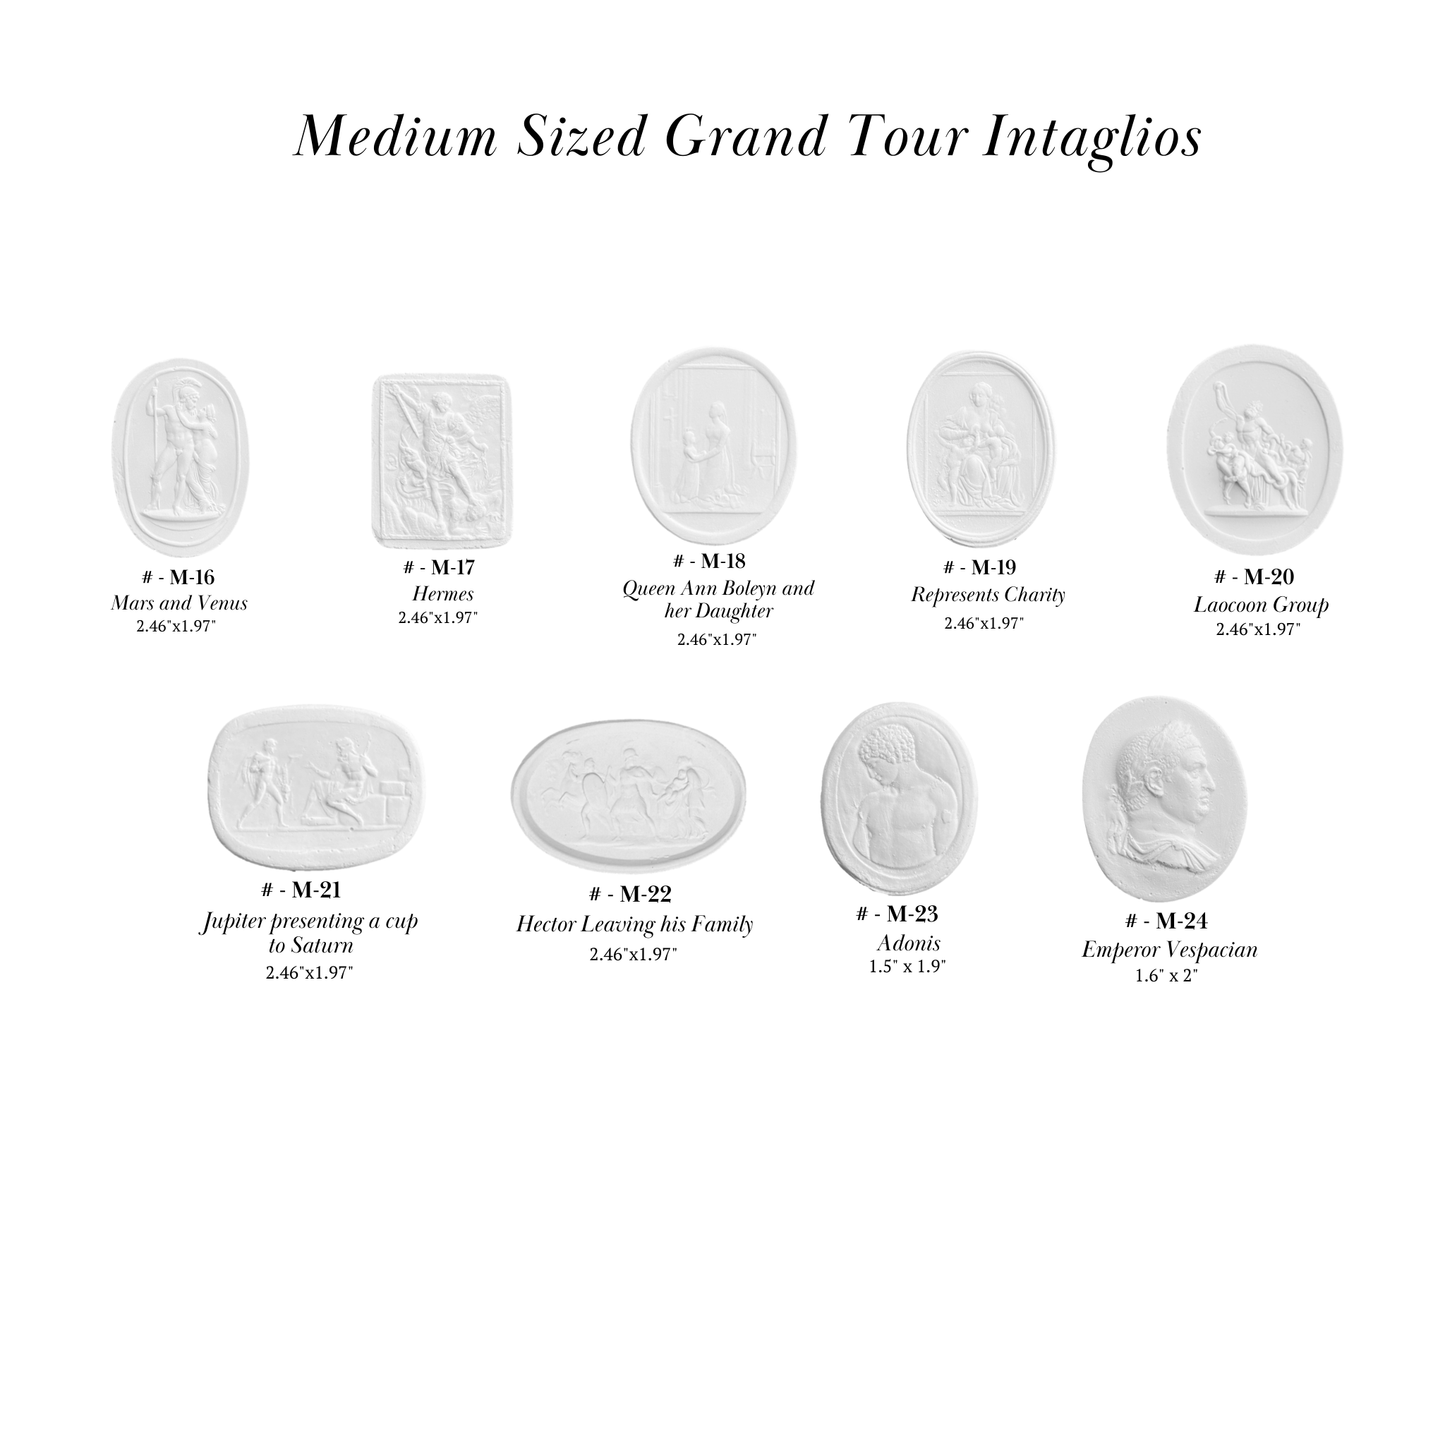 Medium Size Grand Tour Intaglios